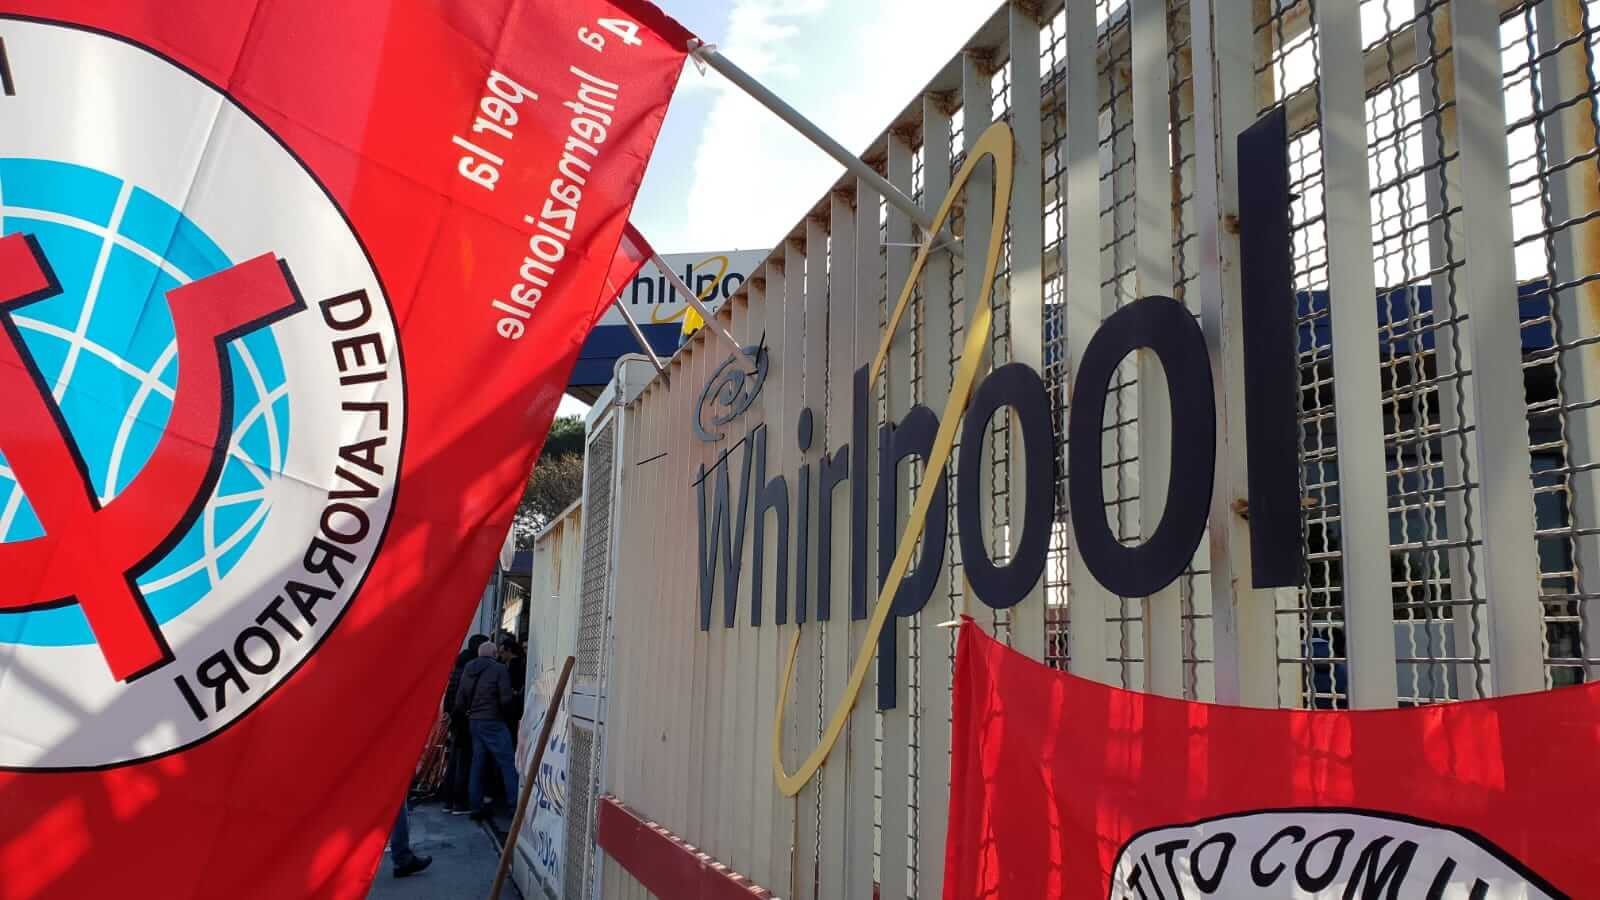 Crisi Whirlpool: confermato lo sciopero dei dipendenti, in arrivo una grande manifestazione nazionale al Nord a febbraio sotto la sede del quartier generale dell'azienda